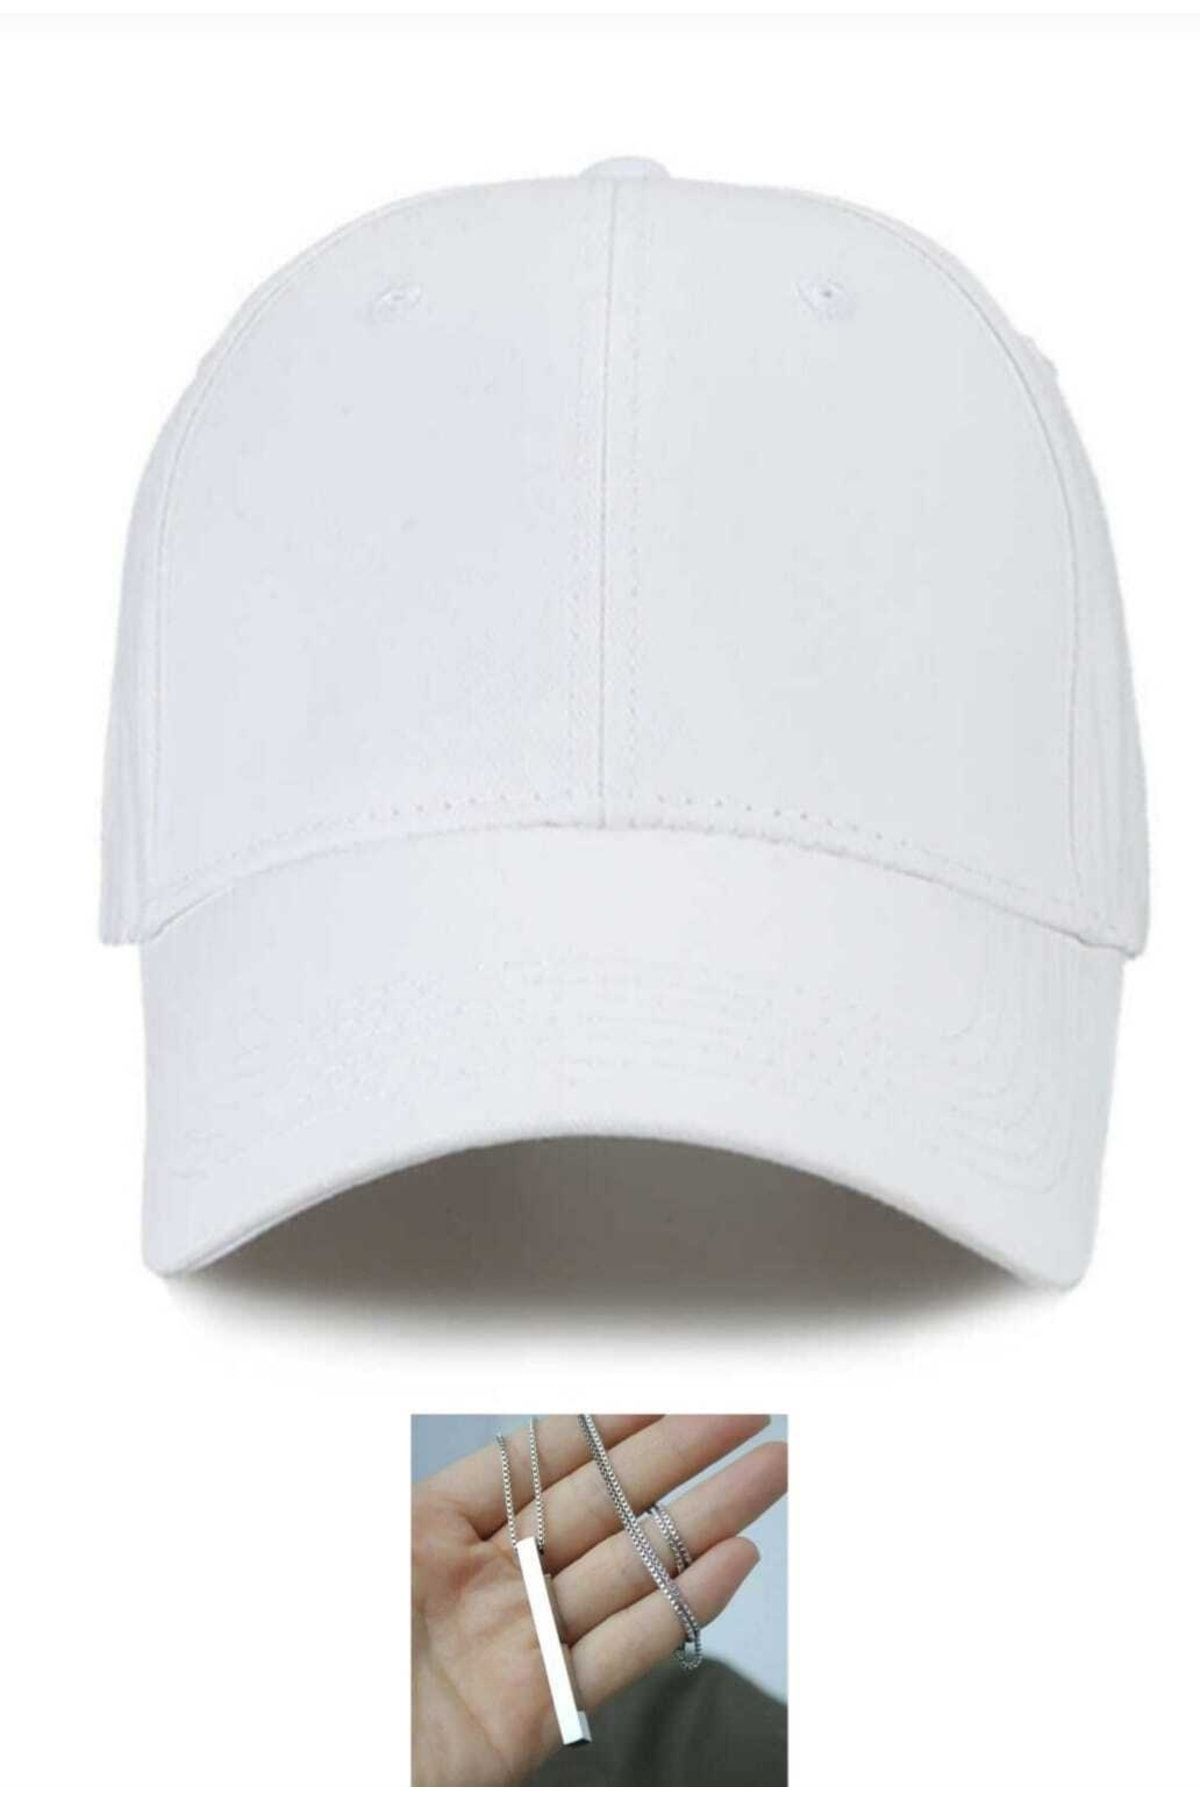 twentyone Yazlık Beyzbol Düz Ve Çeşitli Renklerde Şapka ,kep Yazlık Kep Beyzbol Düz Kolye Emka